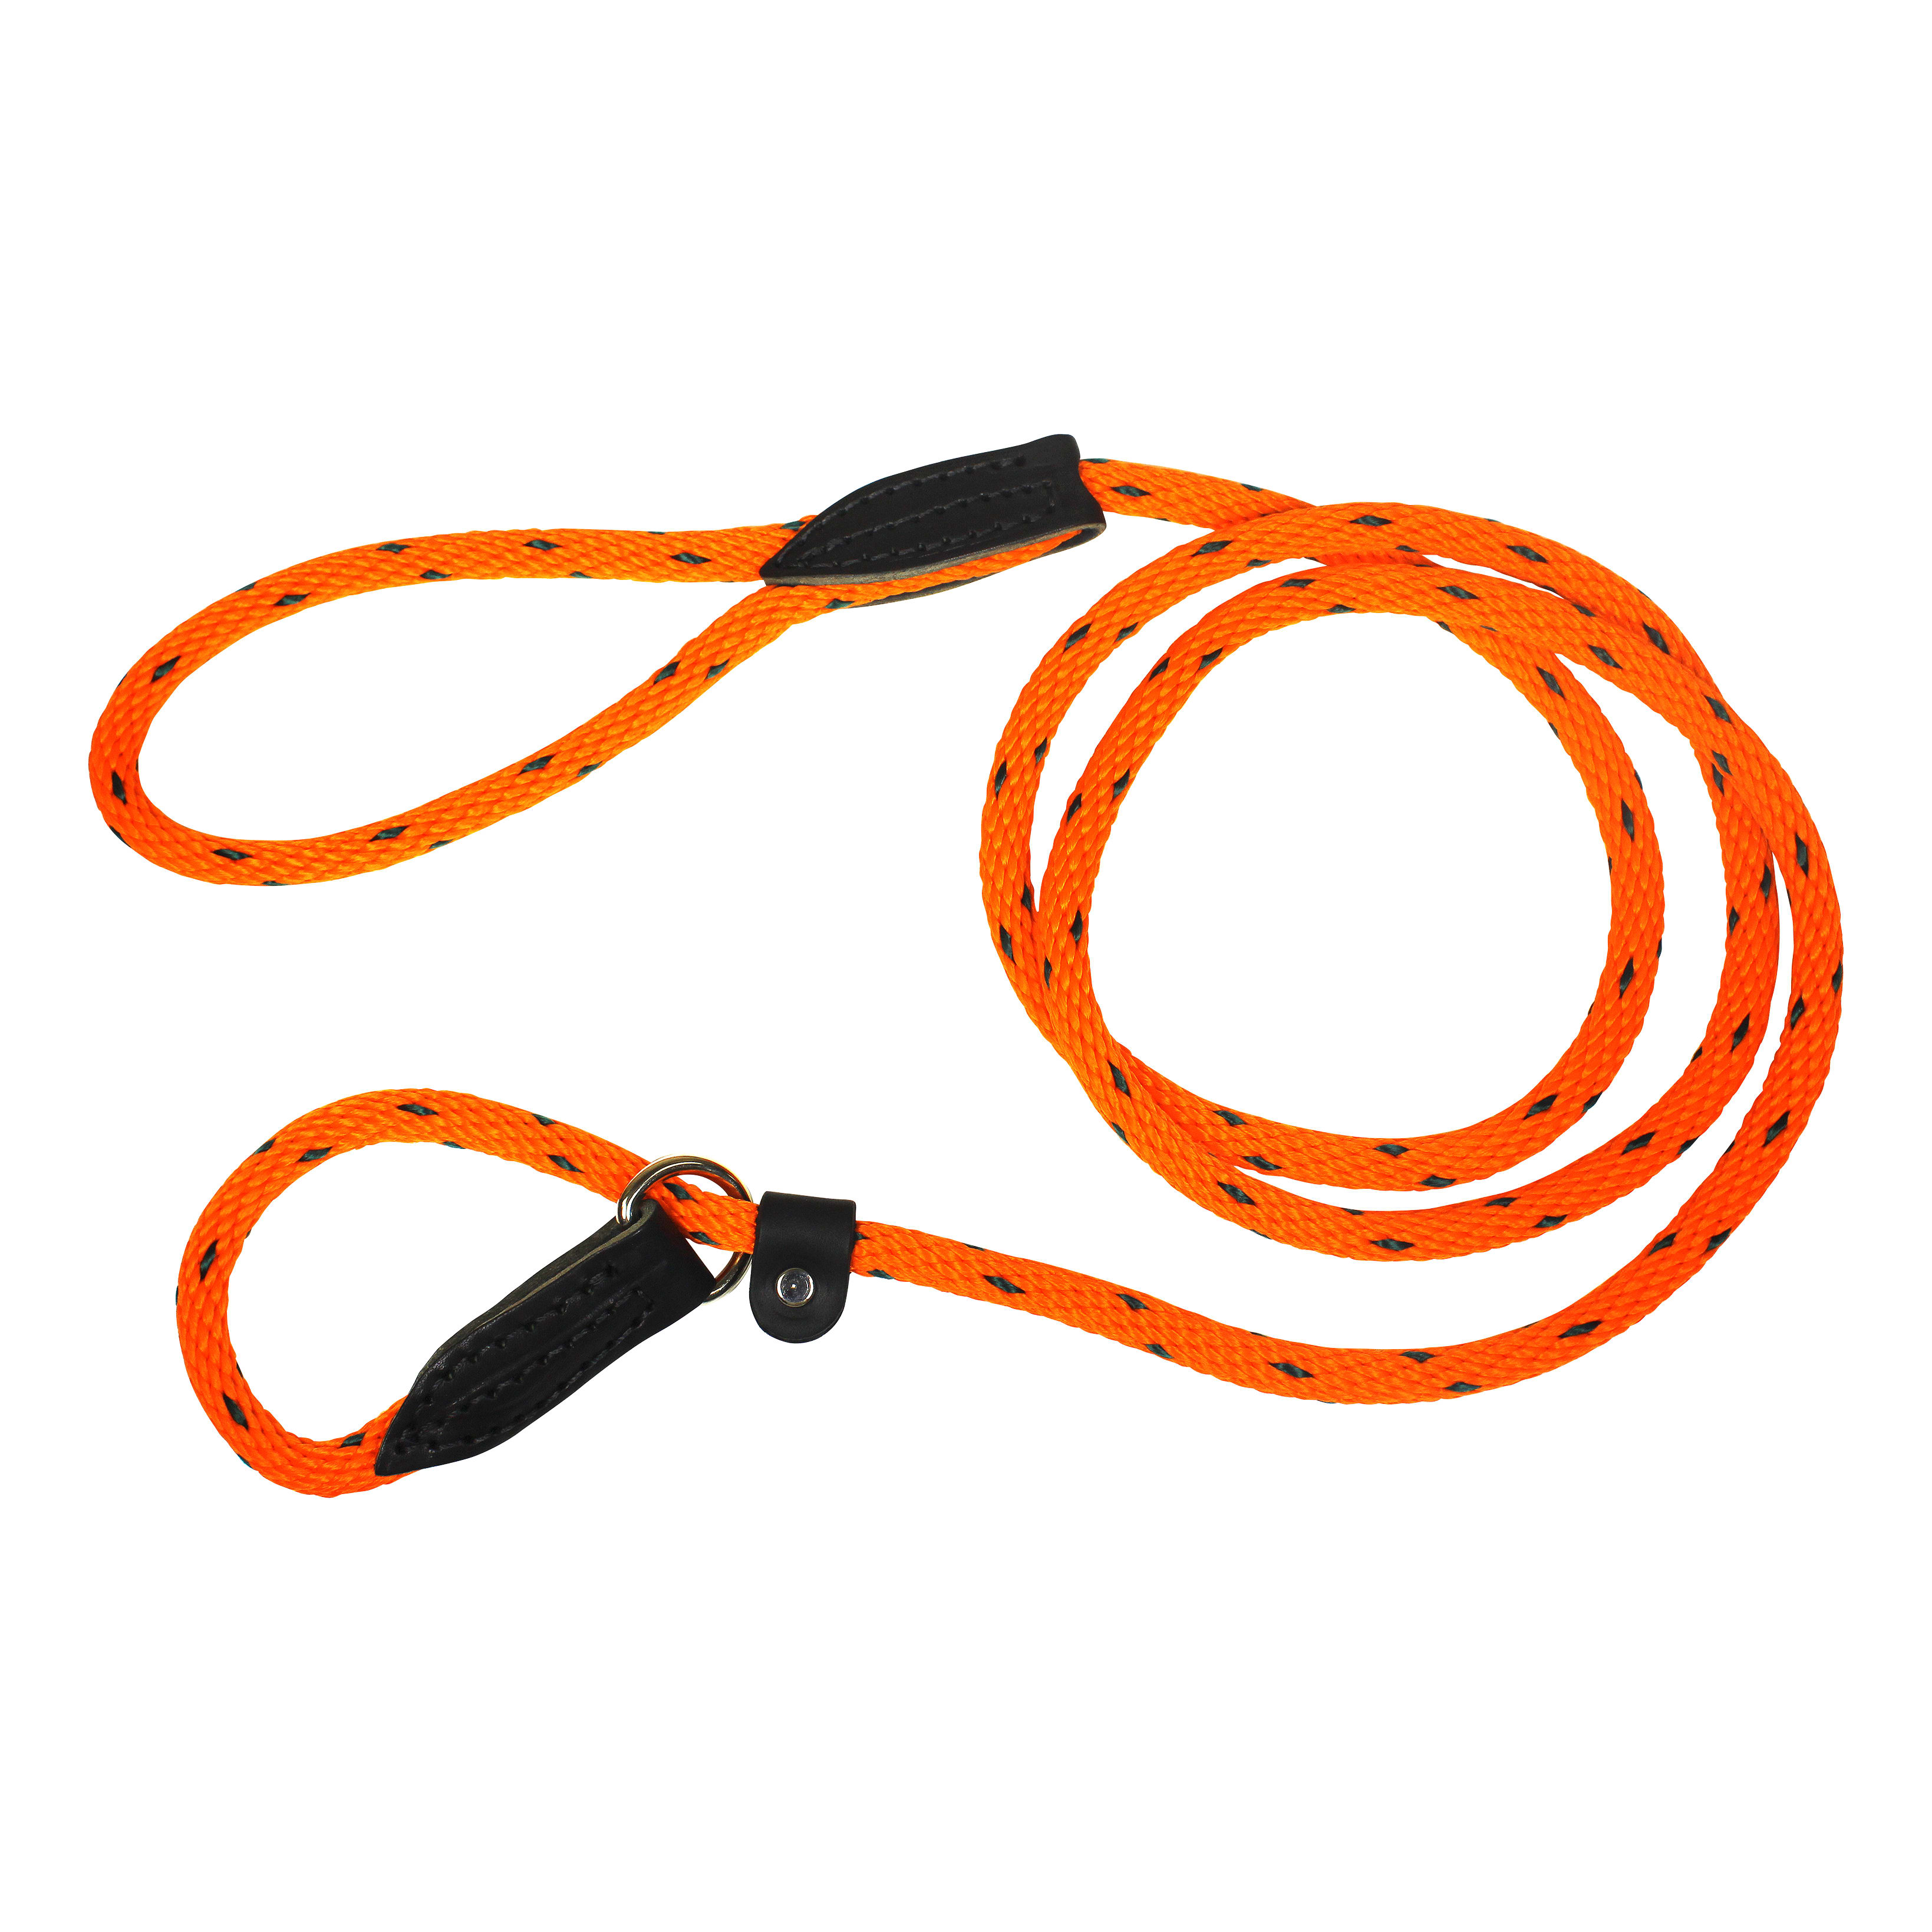 Omni Pet 6-Foot British Rope Lead - Orange